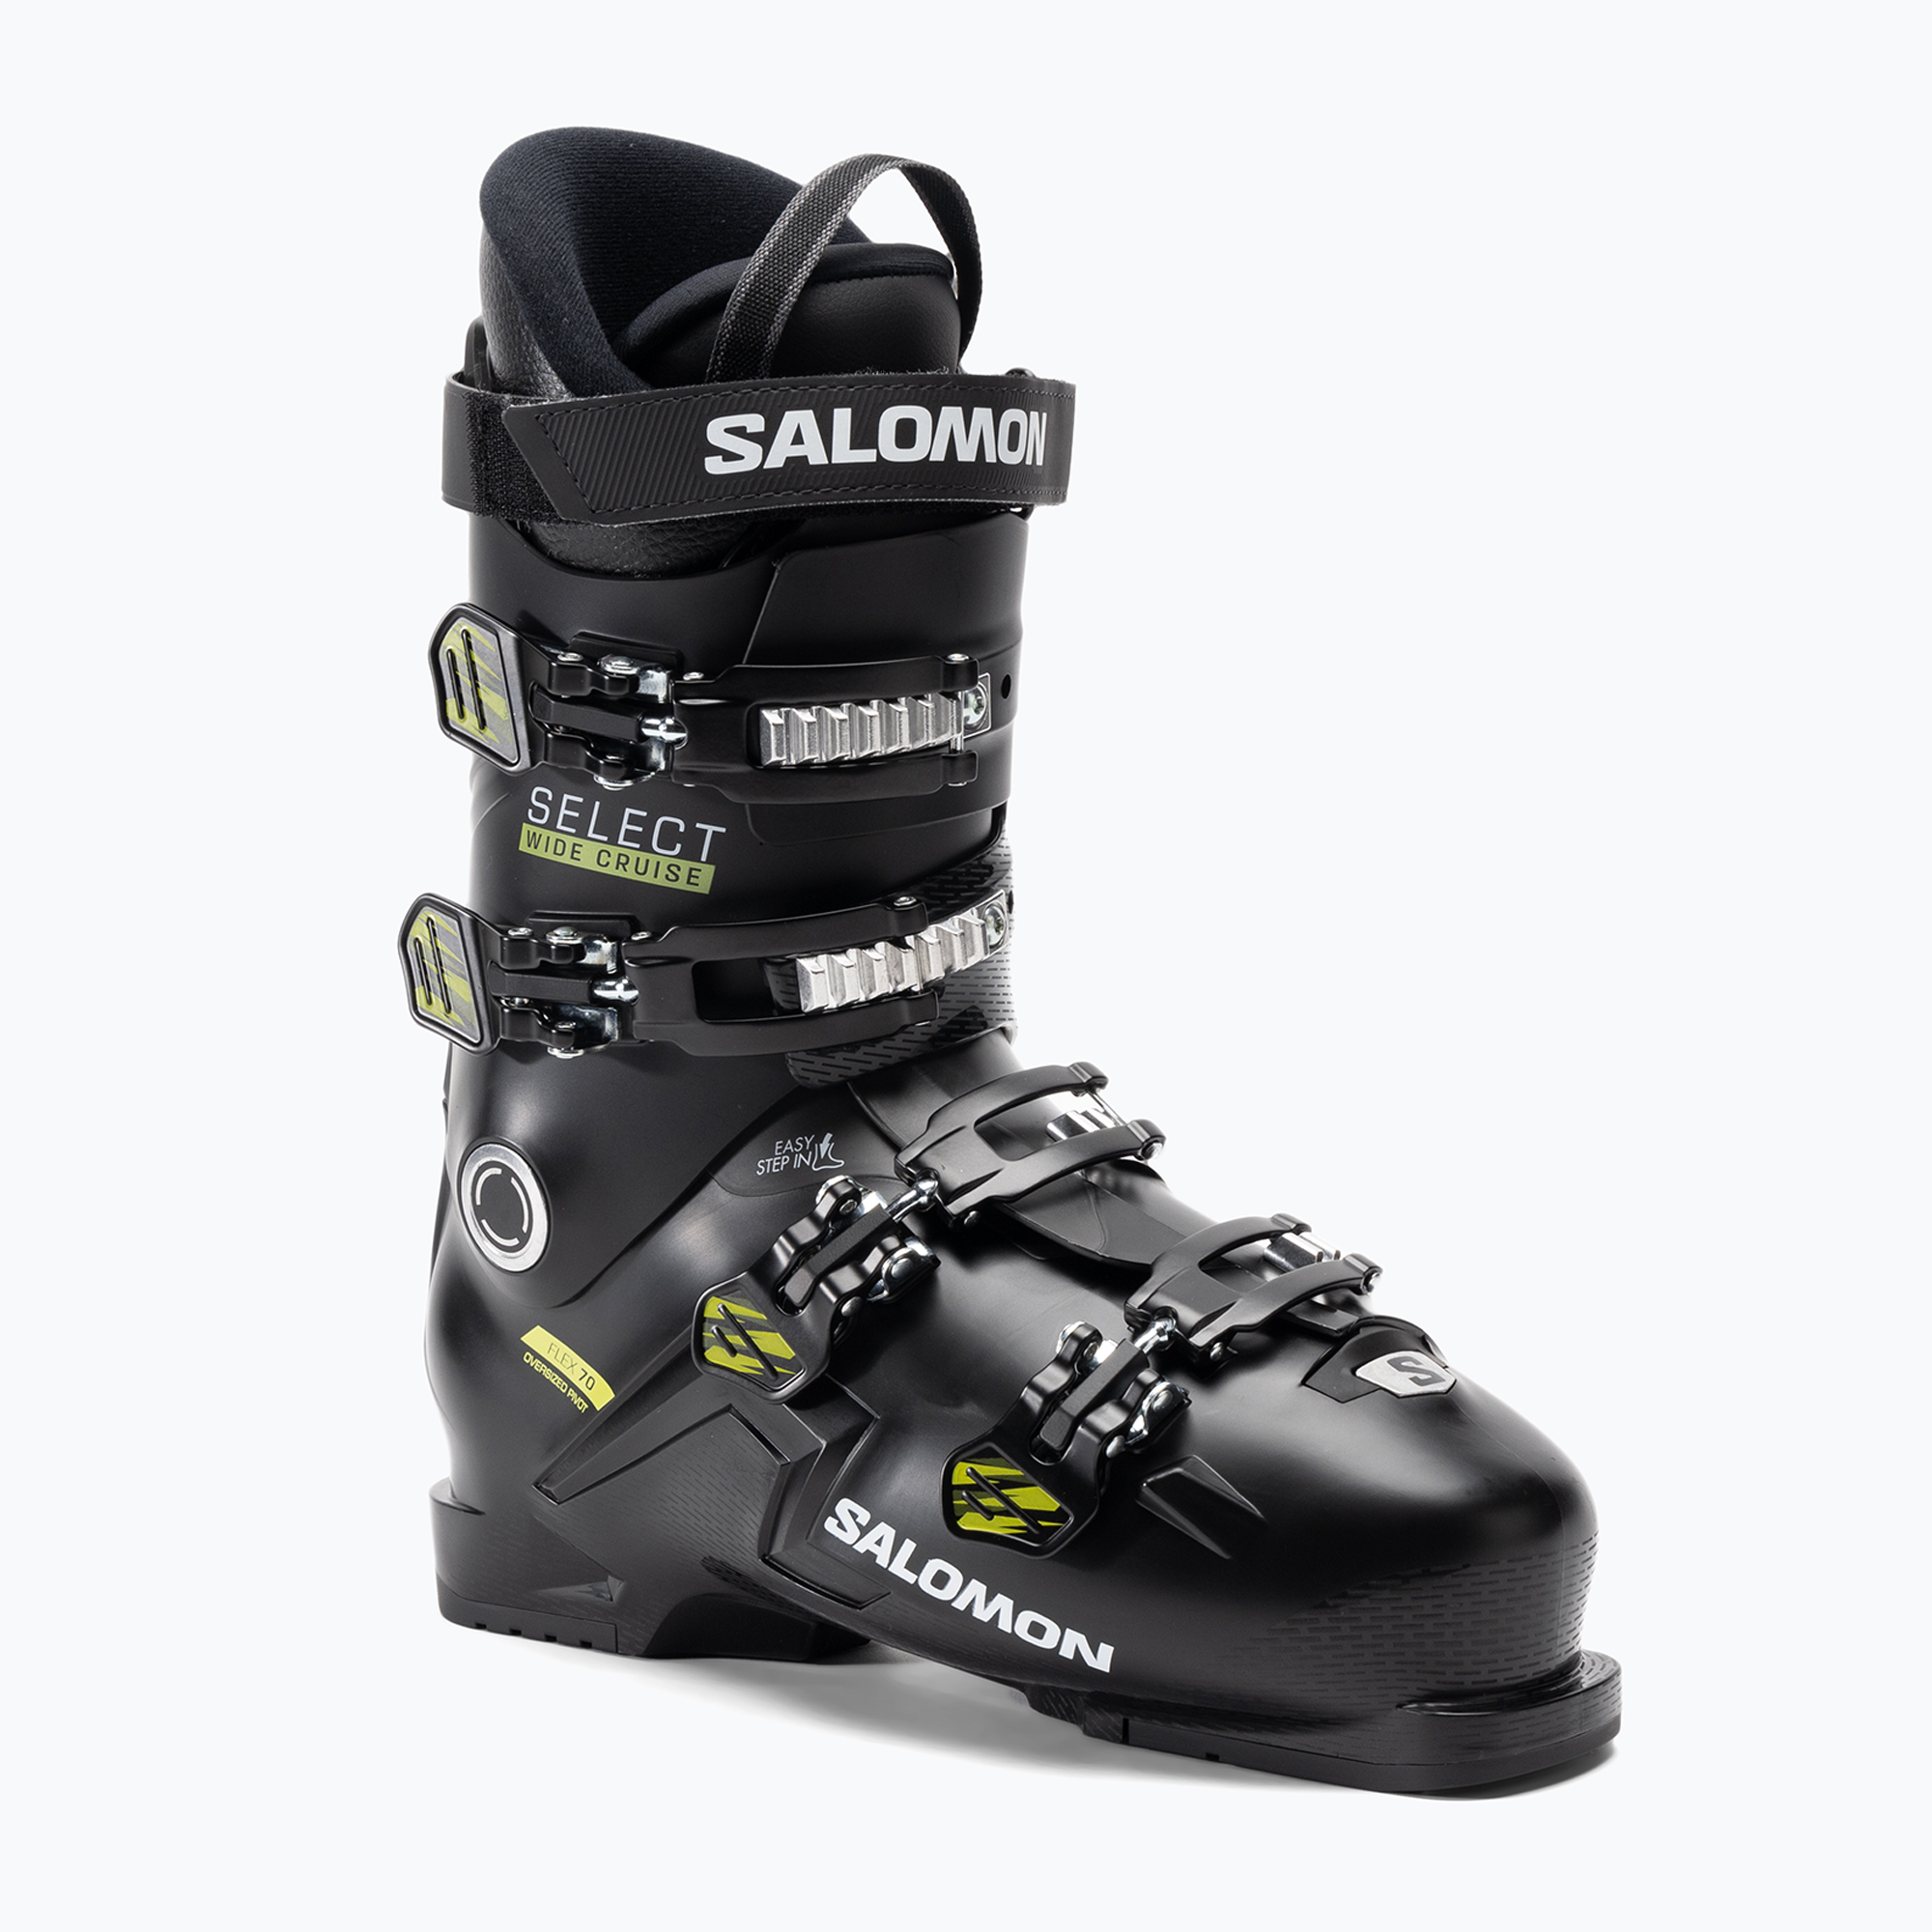 Мъжки ски обувки Salomon Select Wide Cruise 70 black/beluga/acid green